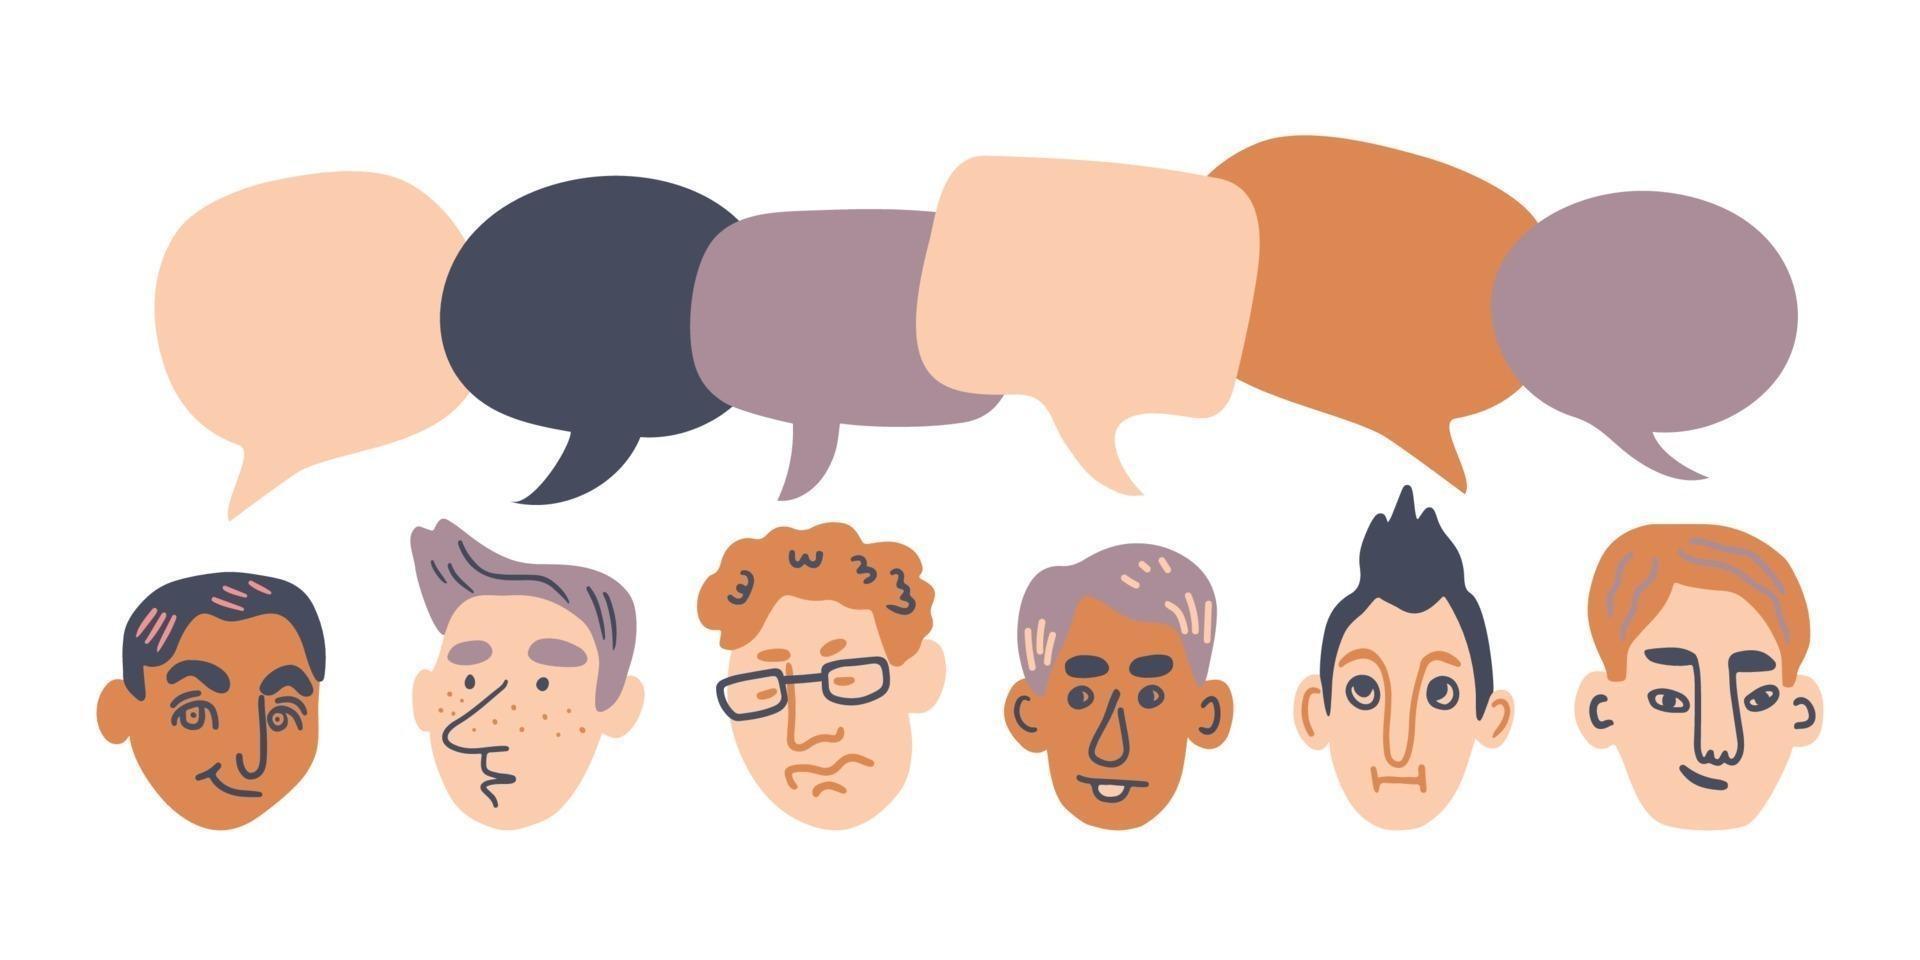 Reihe männlicher Charaktere mit Sprechblasen. menschen avatare kommunikationskonzept. hand gezeichnete karikaturvektorillustration vektor